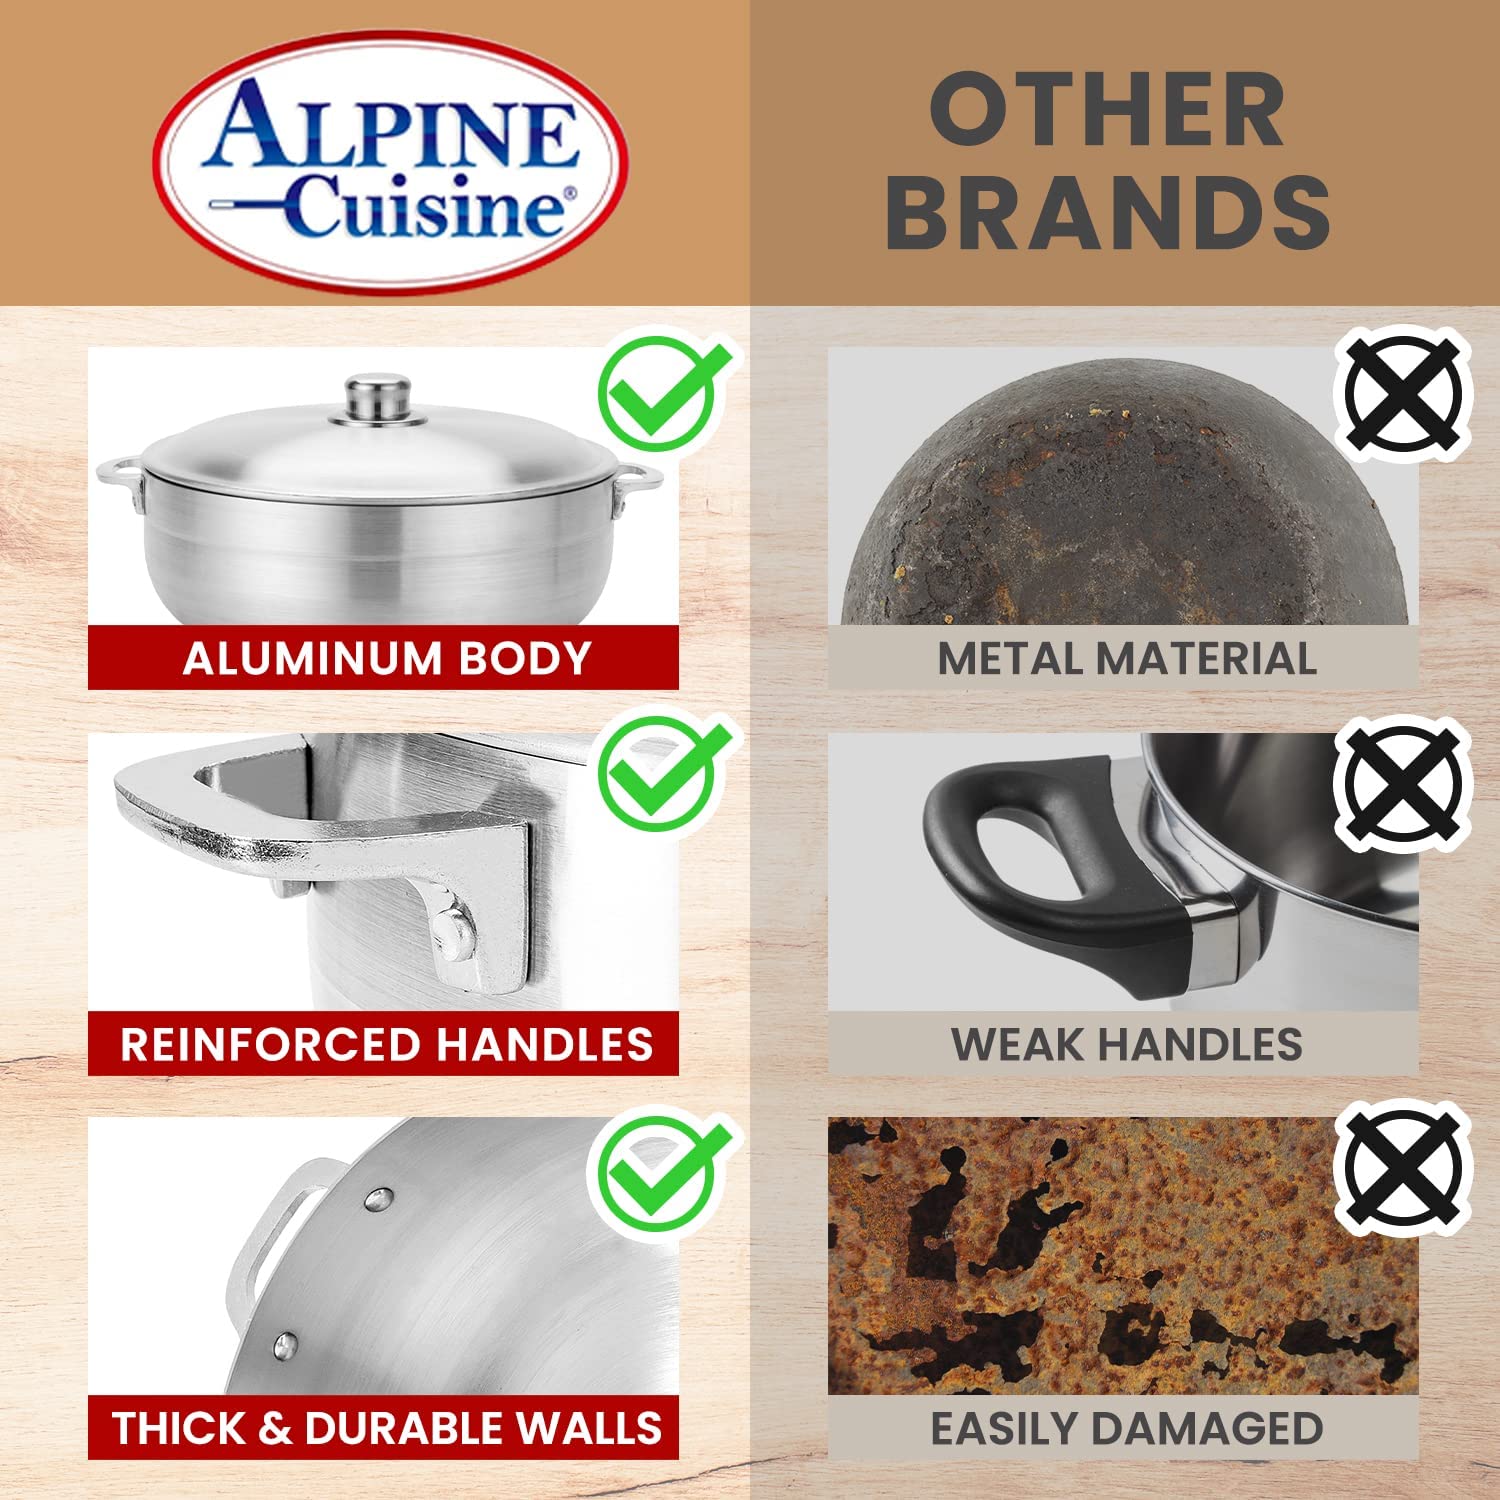 Alpine Cuisine 7-Quart Gourmet Aluminum Caldero Stock Pot, Cooking Dut